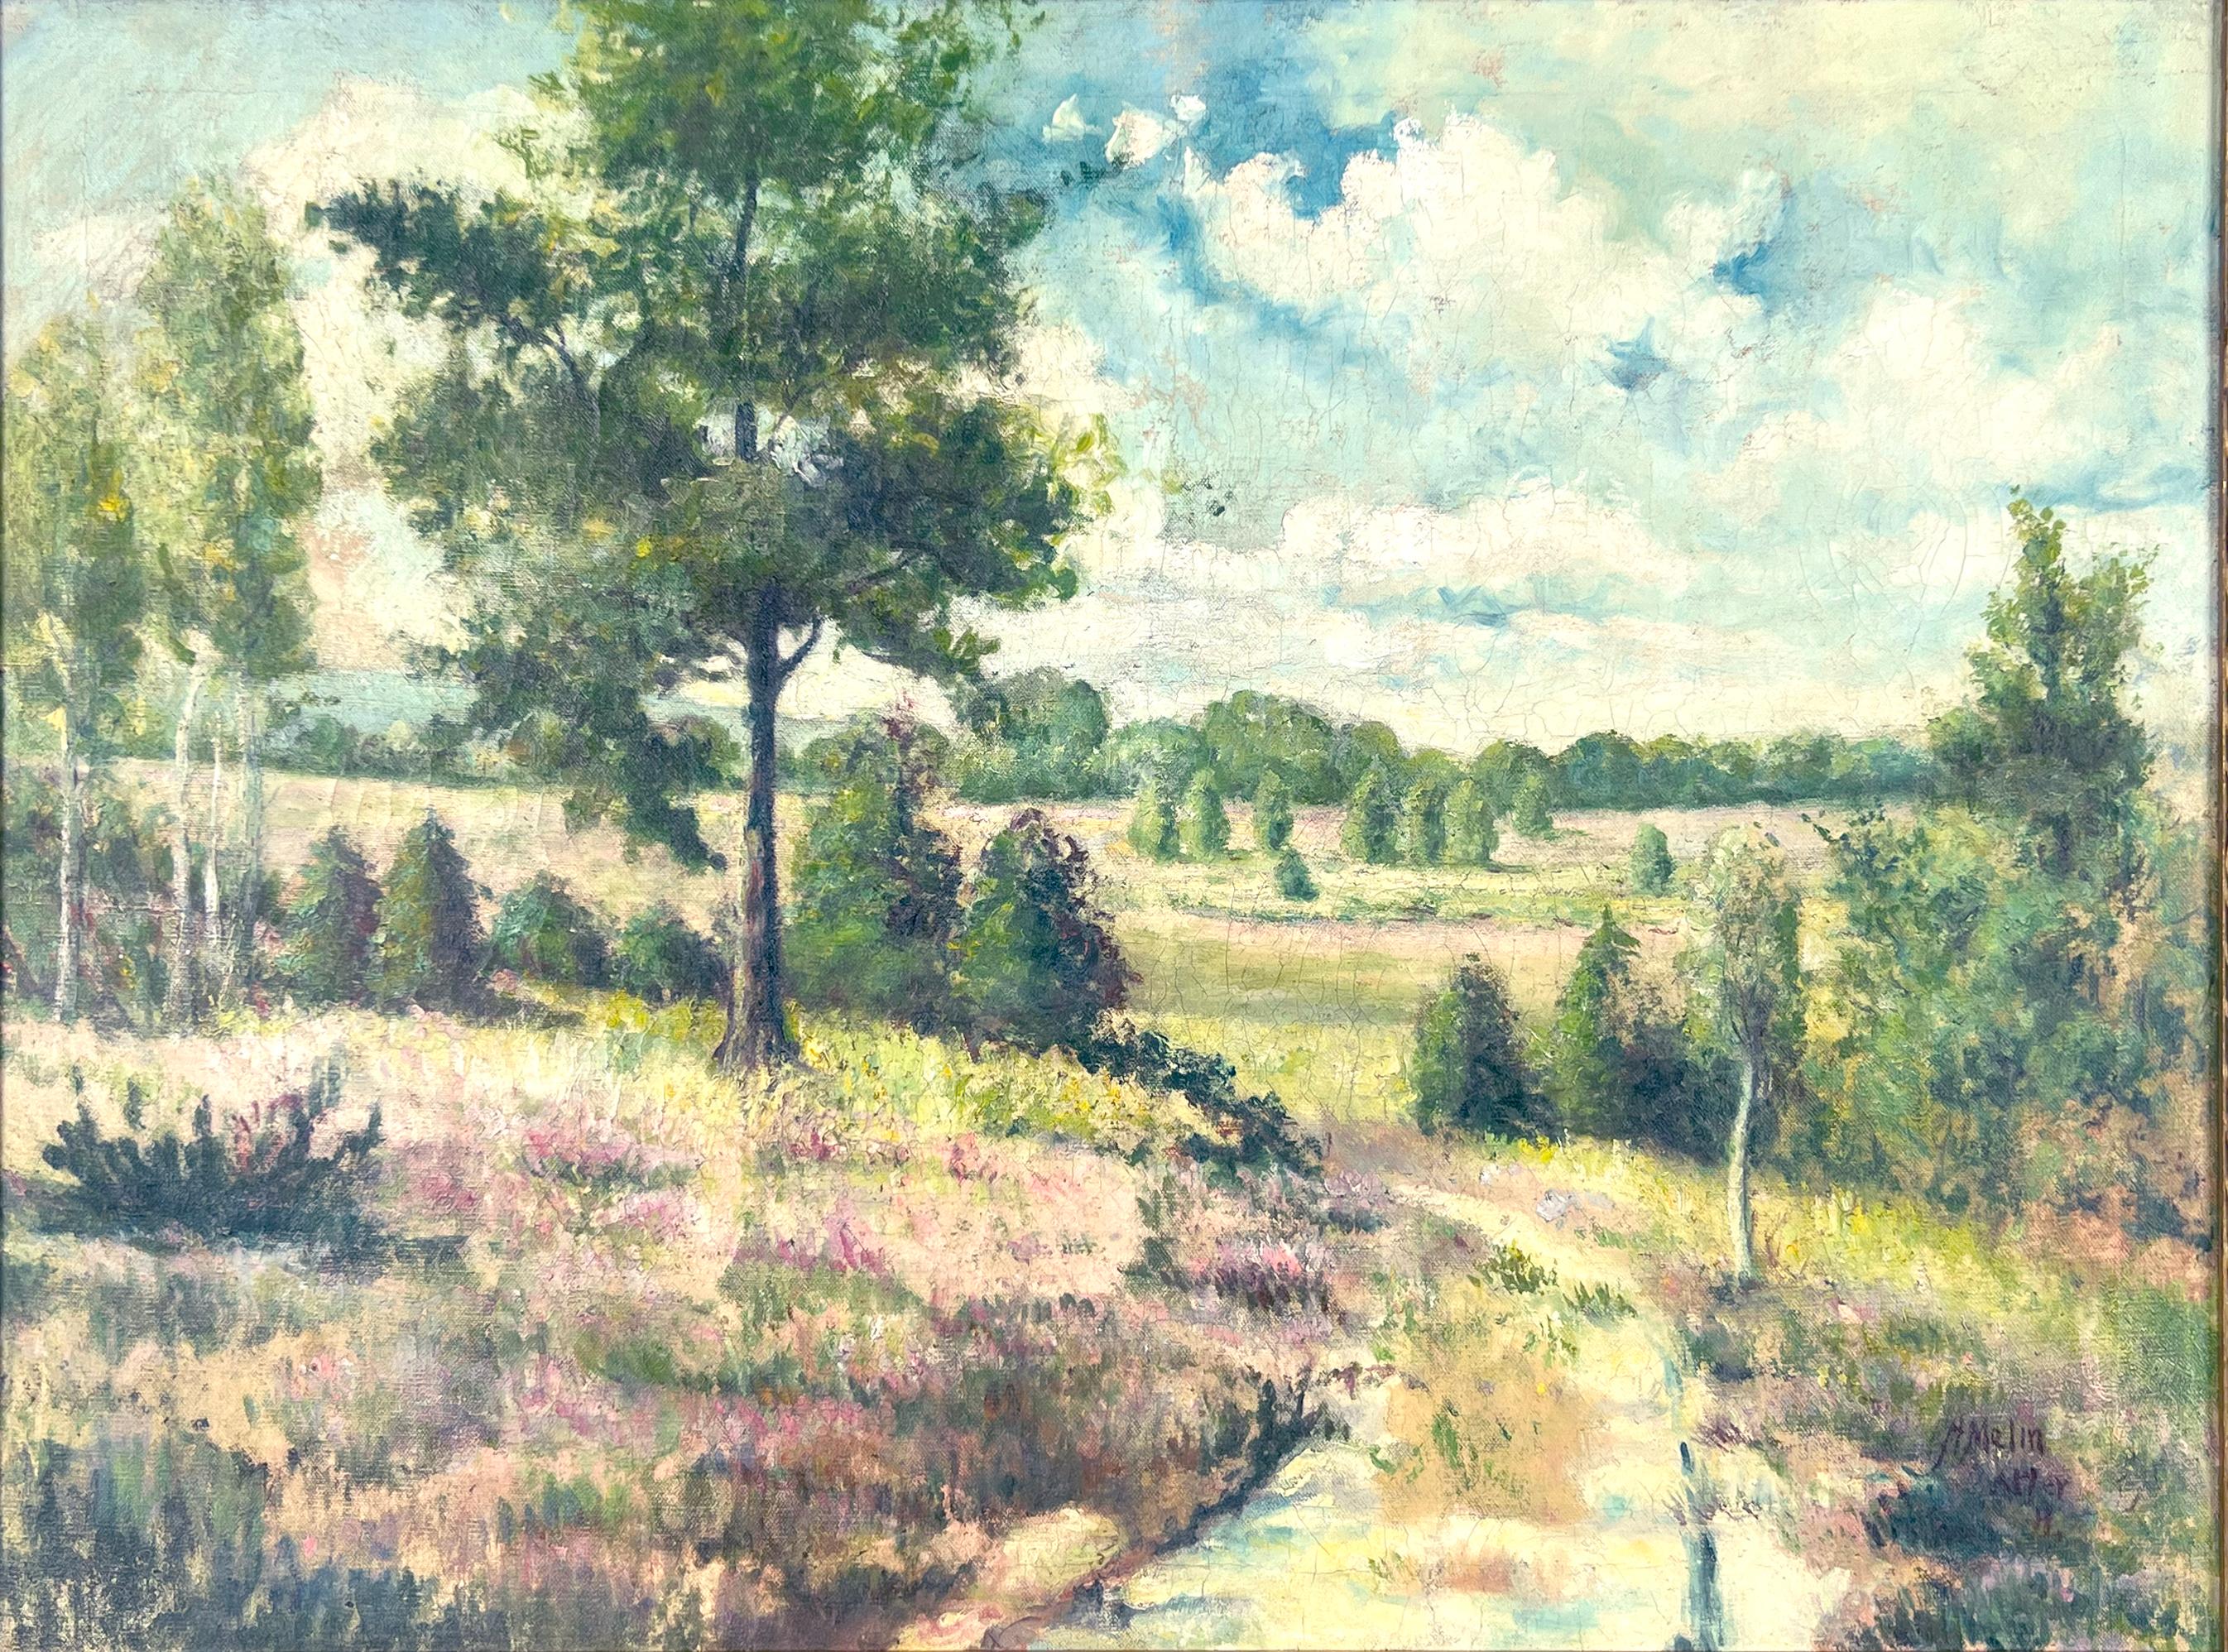 Arley - Staffordshire Heights England Landschaft und Meadows von Melin – Painting von A. Melin